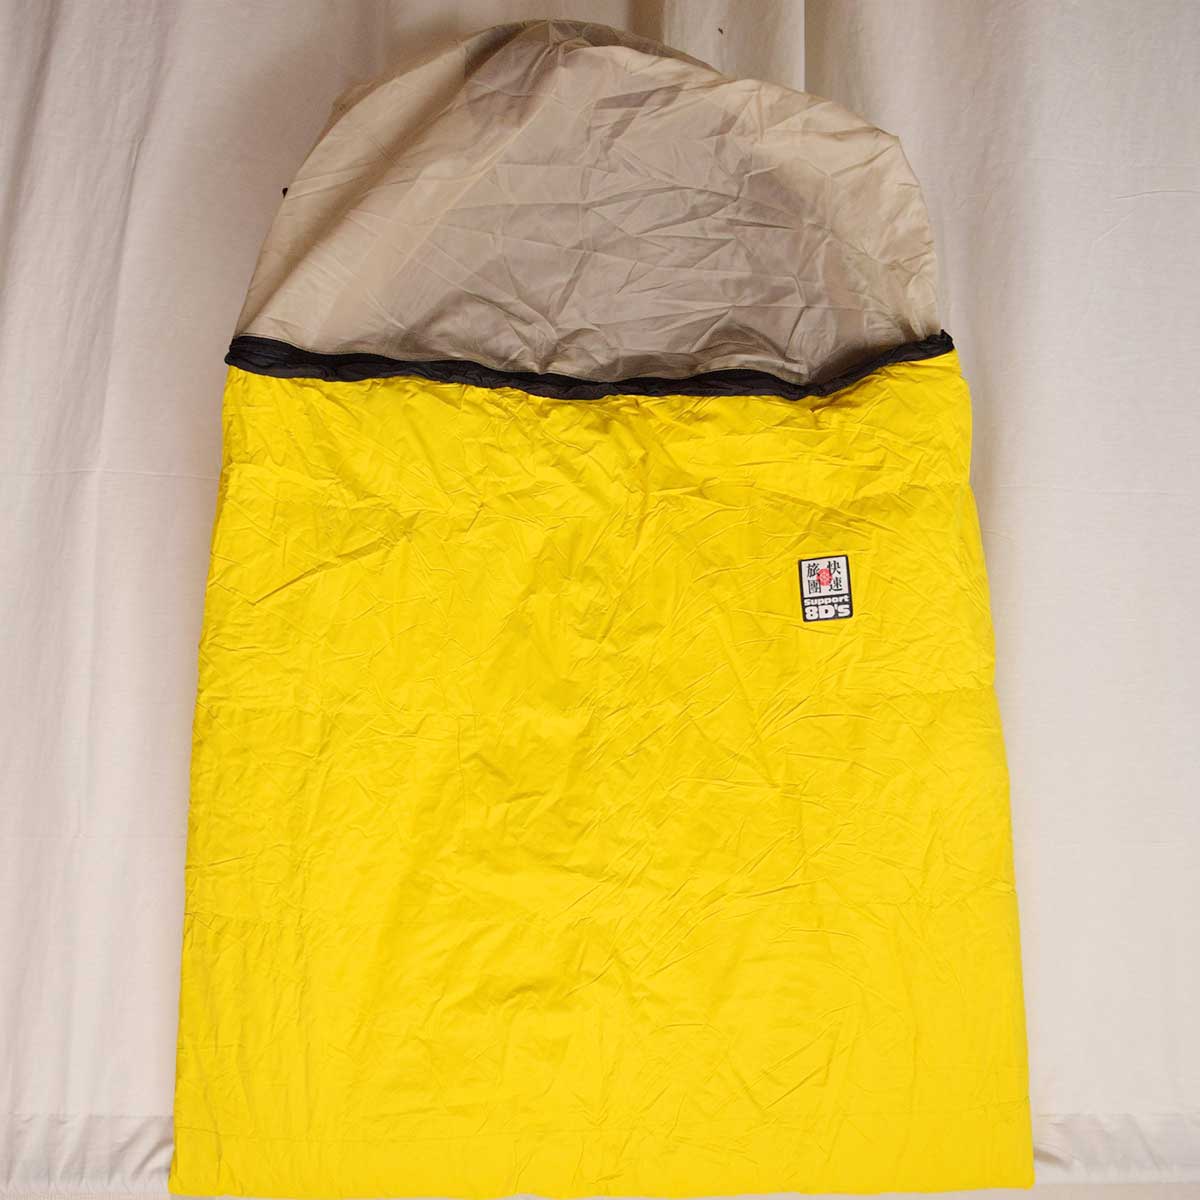 新版 【中古】 シュラフ 寝袋 中綿なしモデル 20℃以上対応 ツーリング キャンプ アウトドア アウトドア用寝具